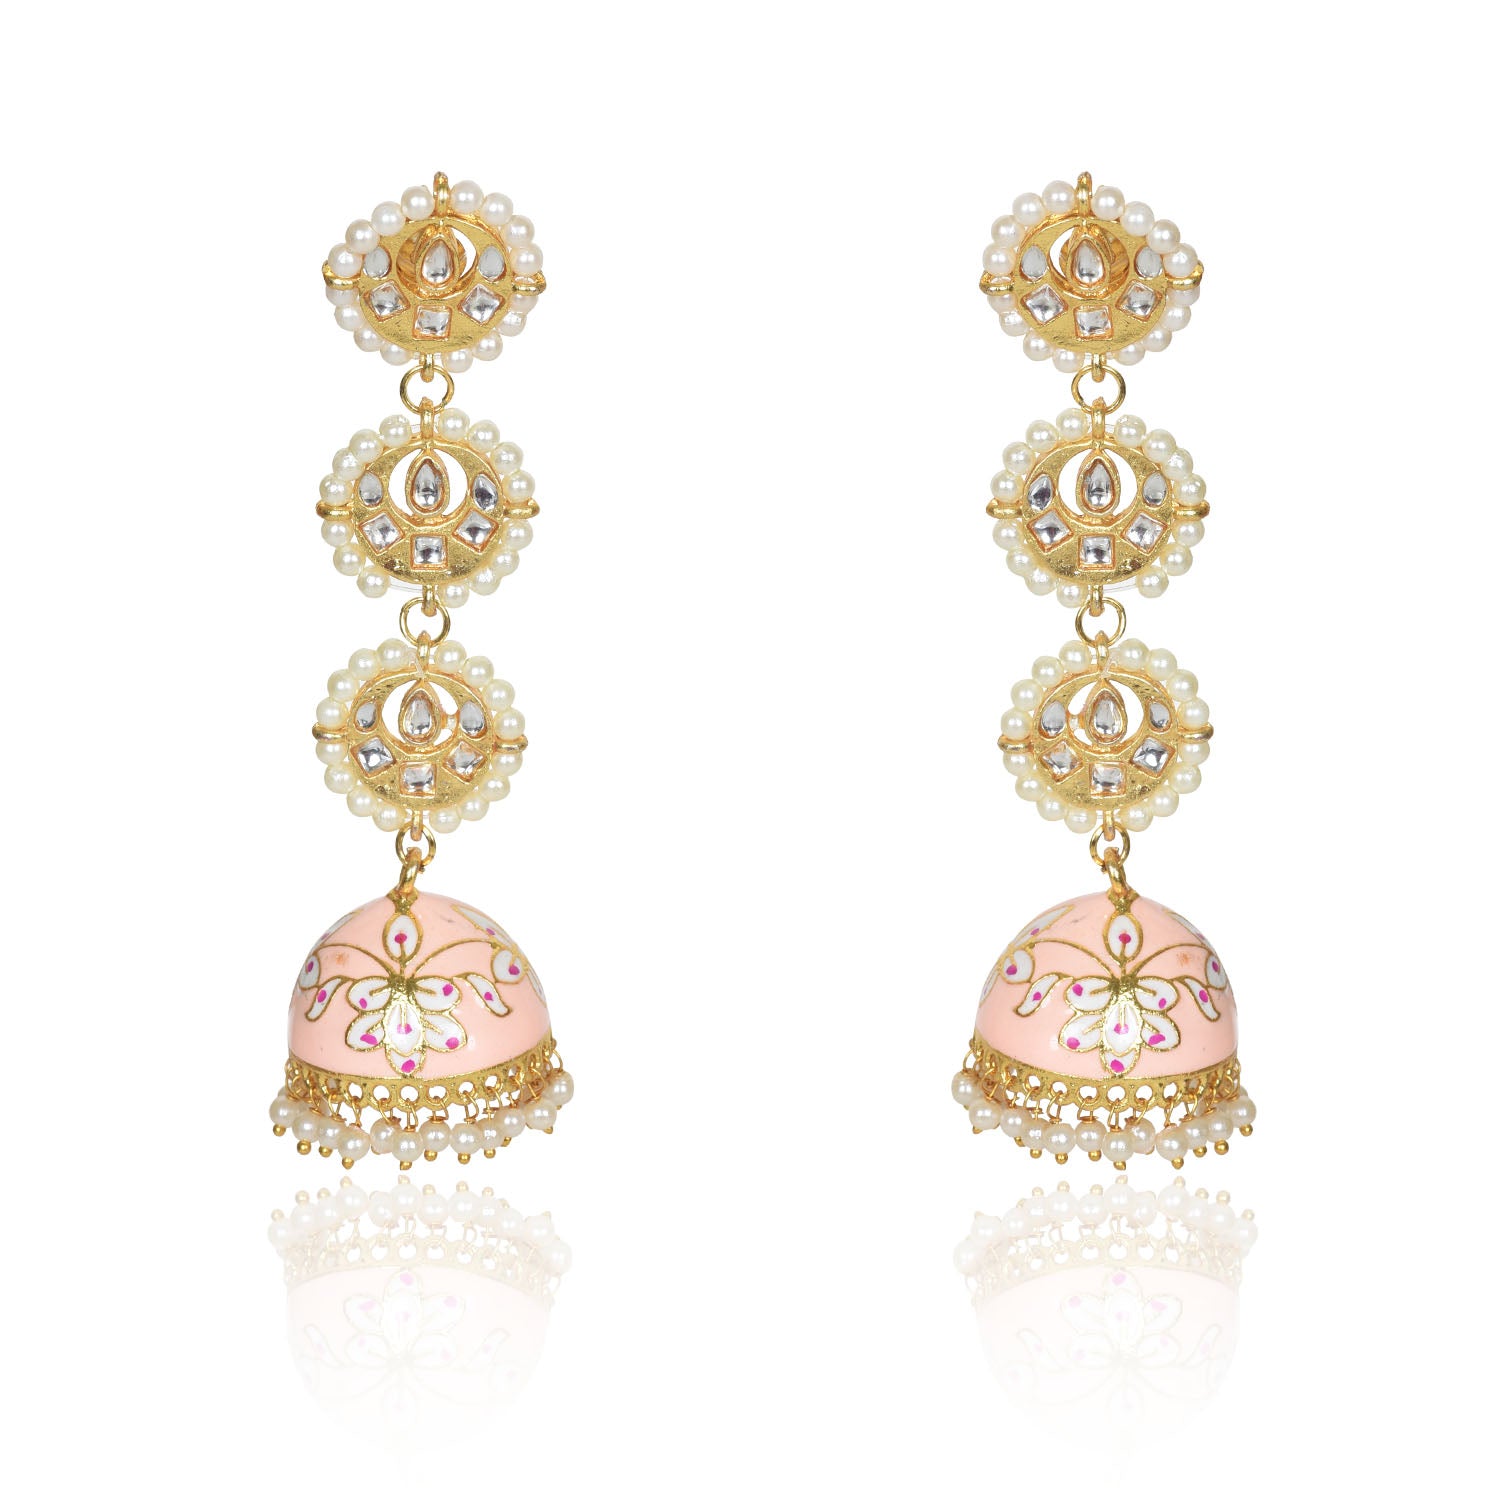 Showroom of Latest fancy earrings in 22k gold. | Jewelxy - 226029